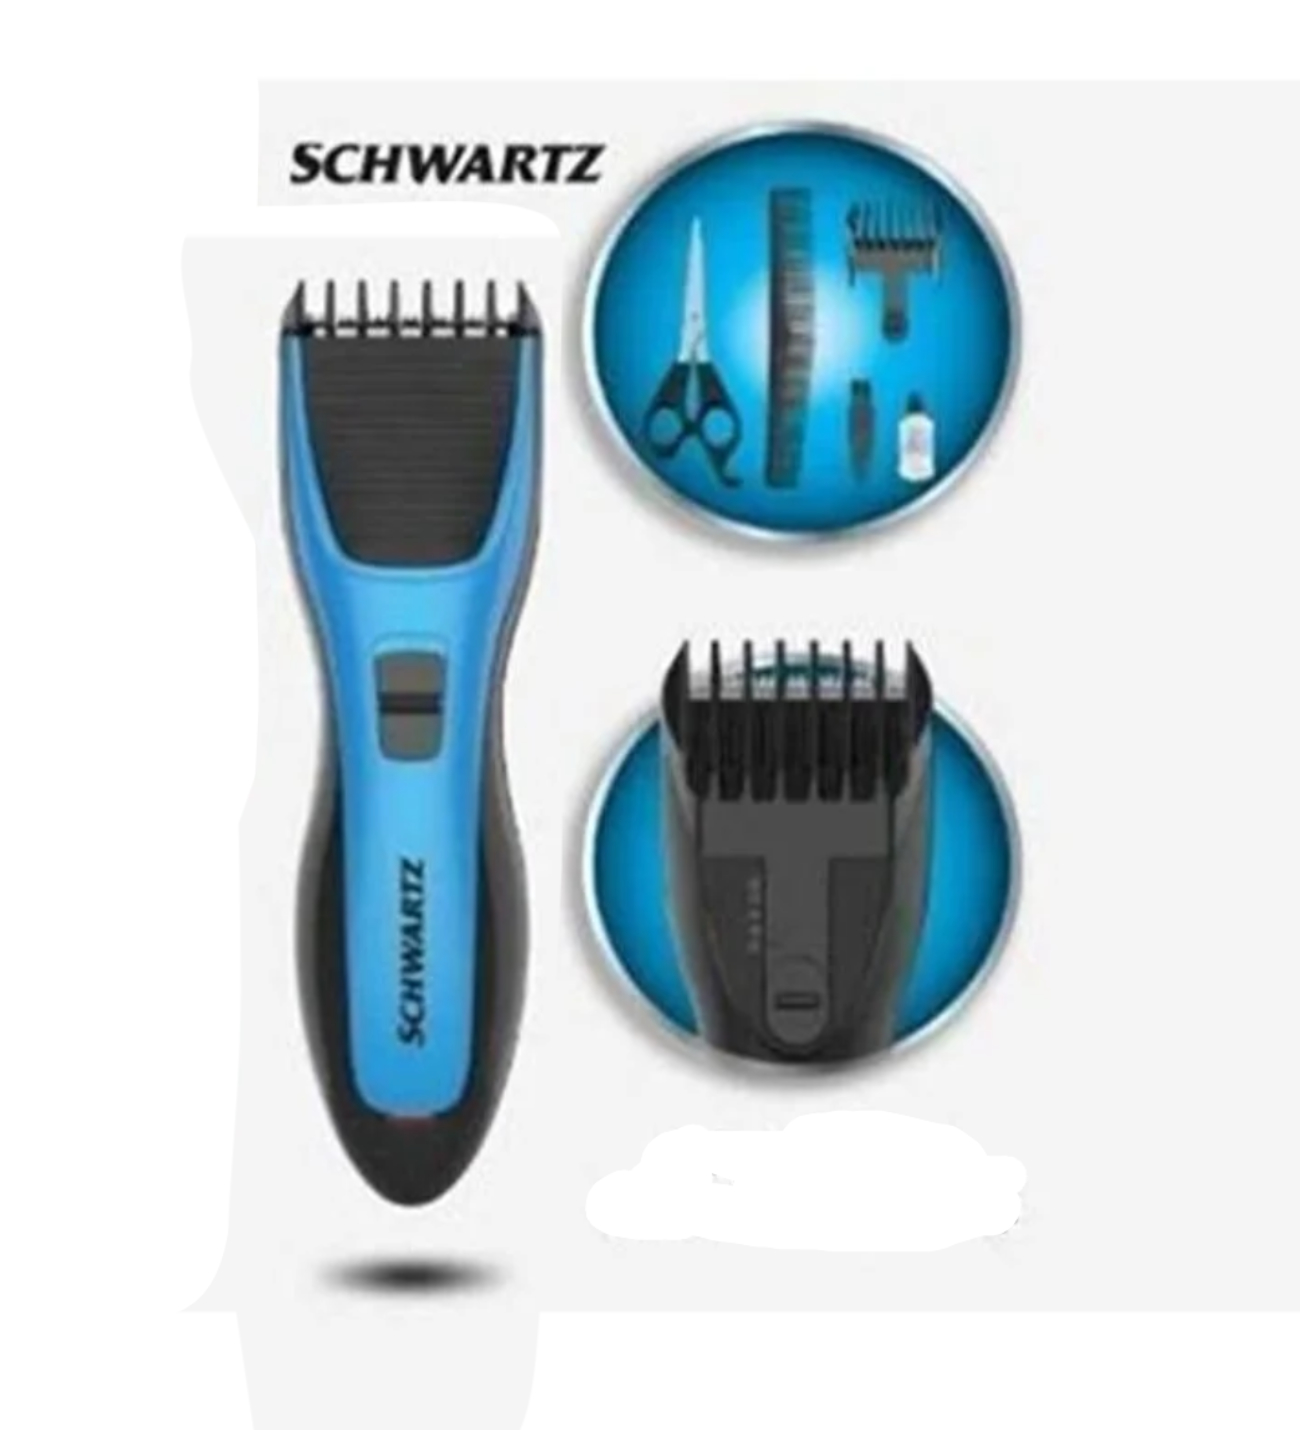 Schwartz SWHC 5611 Trimer set za za kosu i bradu - Bežični trimer koji radi na 2x AA baterije. Lako se koristi i još lakše održava. ,Schwartz SWHC 5611 Trimer set za za kosu i bradu - Bežični trimer koji radi na 2x AA baterije. Lako se koristi i još lakše